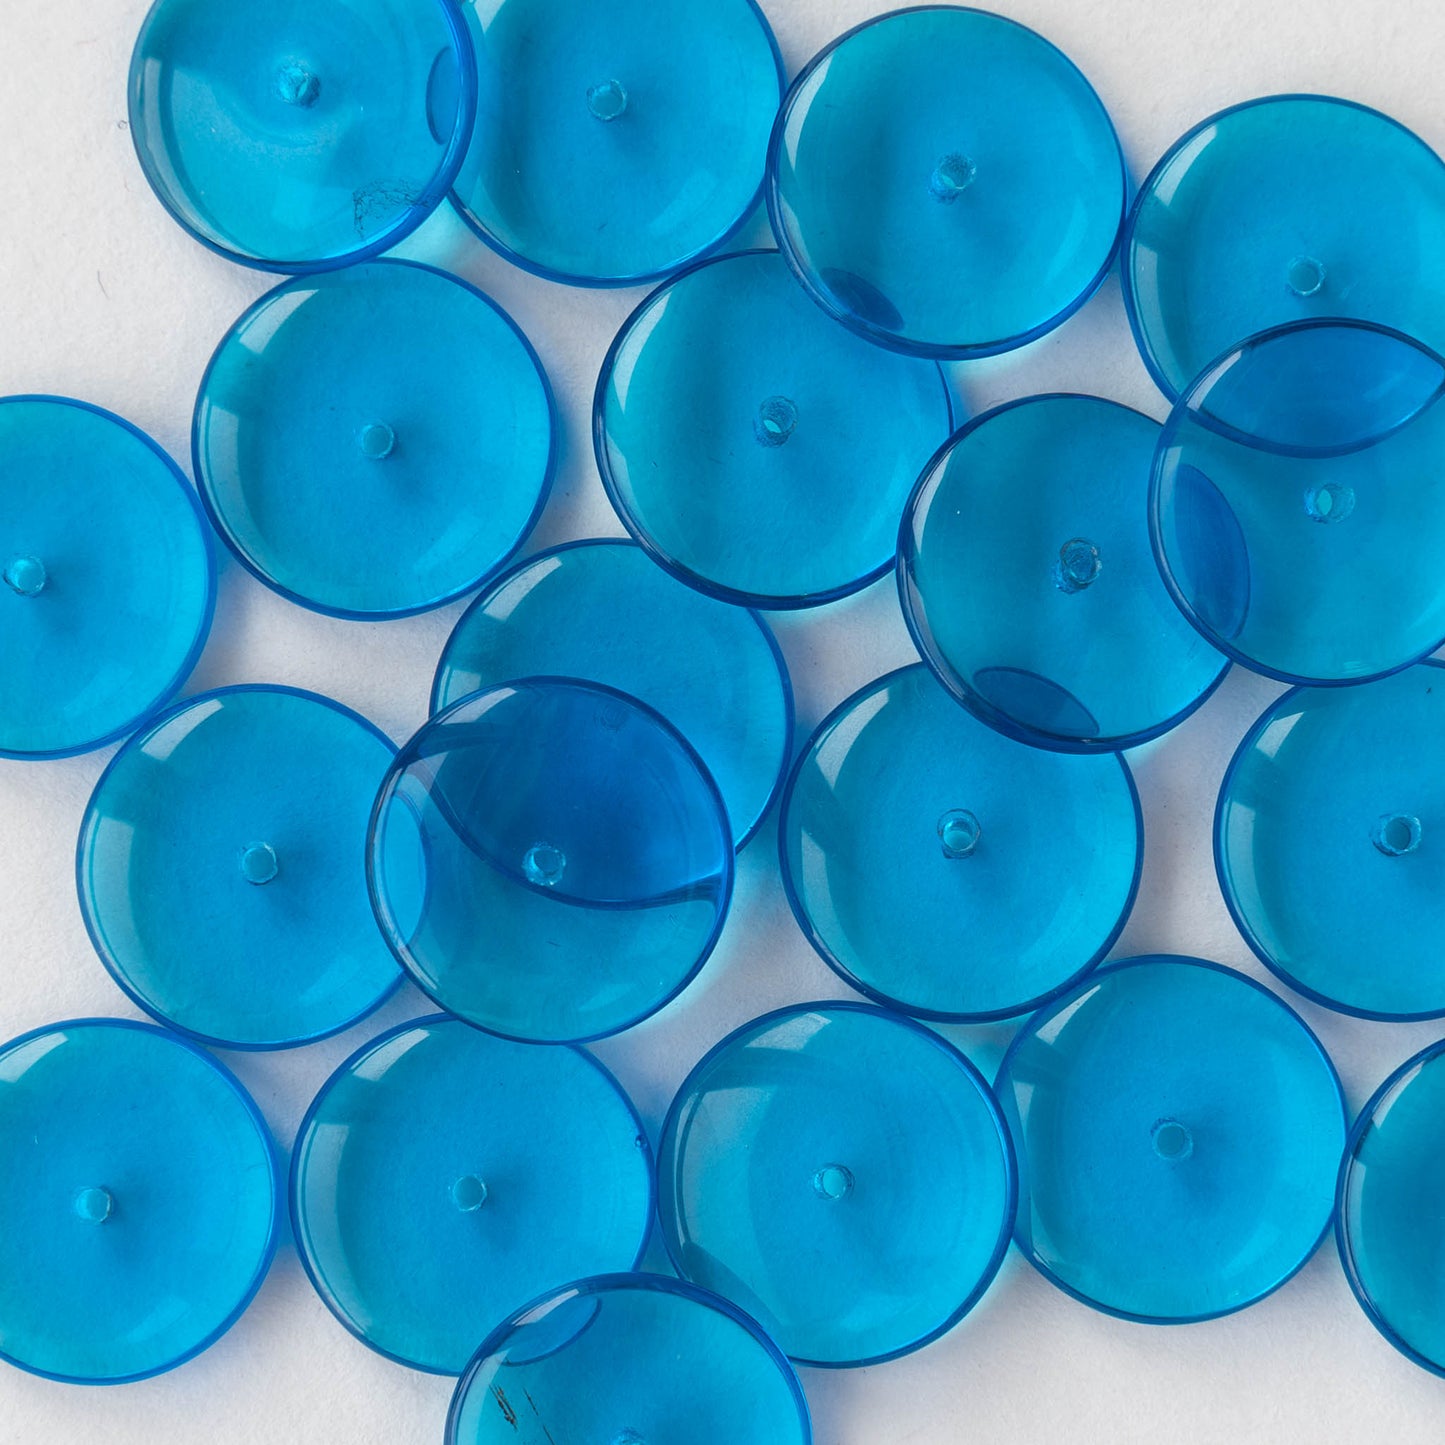 16mm Rondelle Beads - Capri Blue - 10 Beads